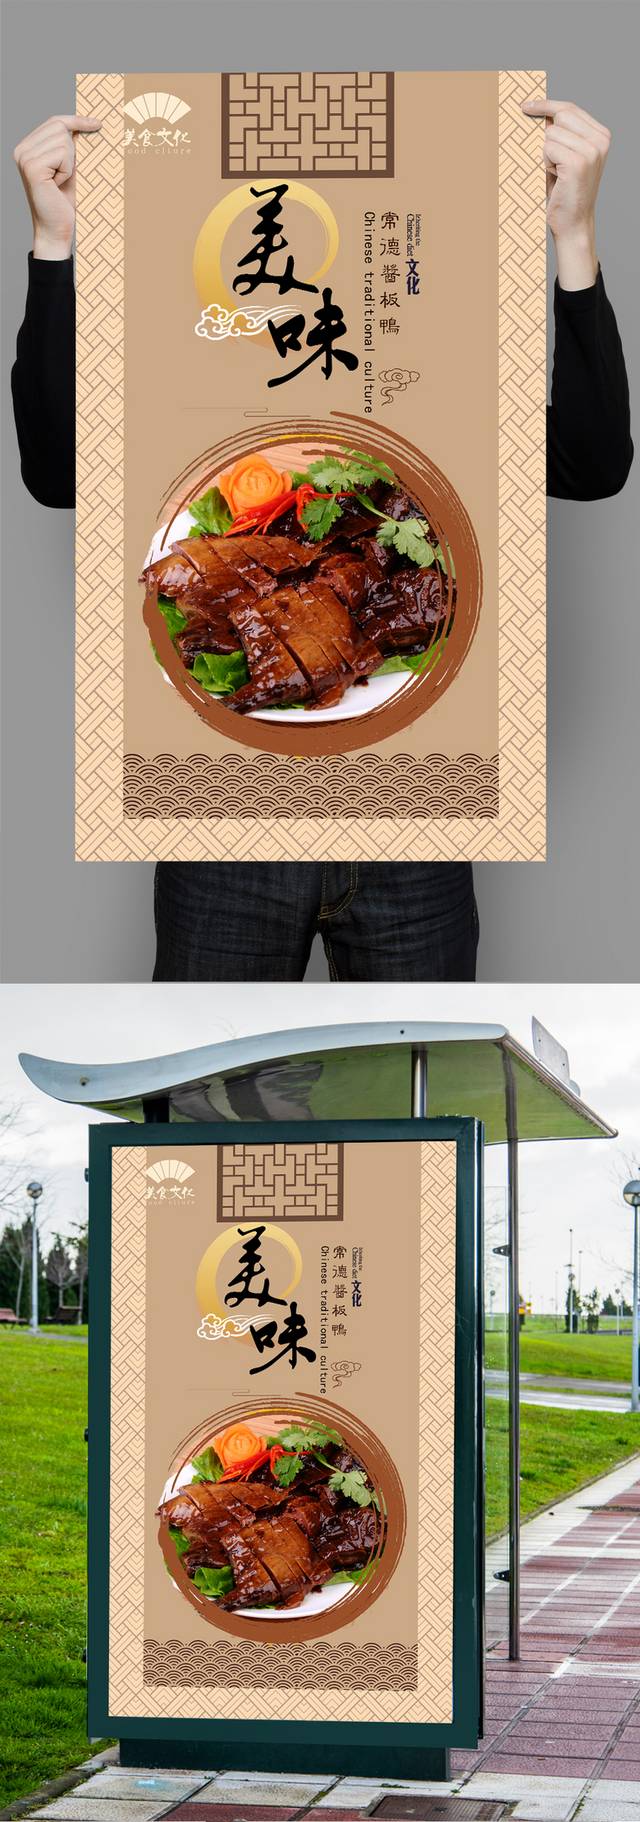 中式常德酱板鸭宣传海报设计